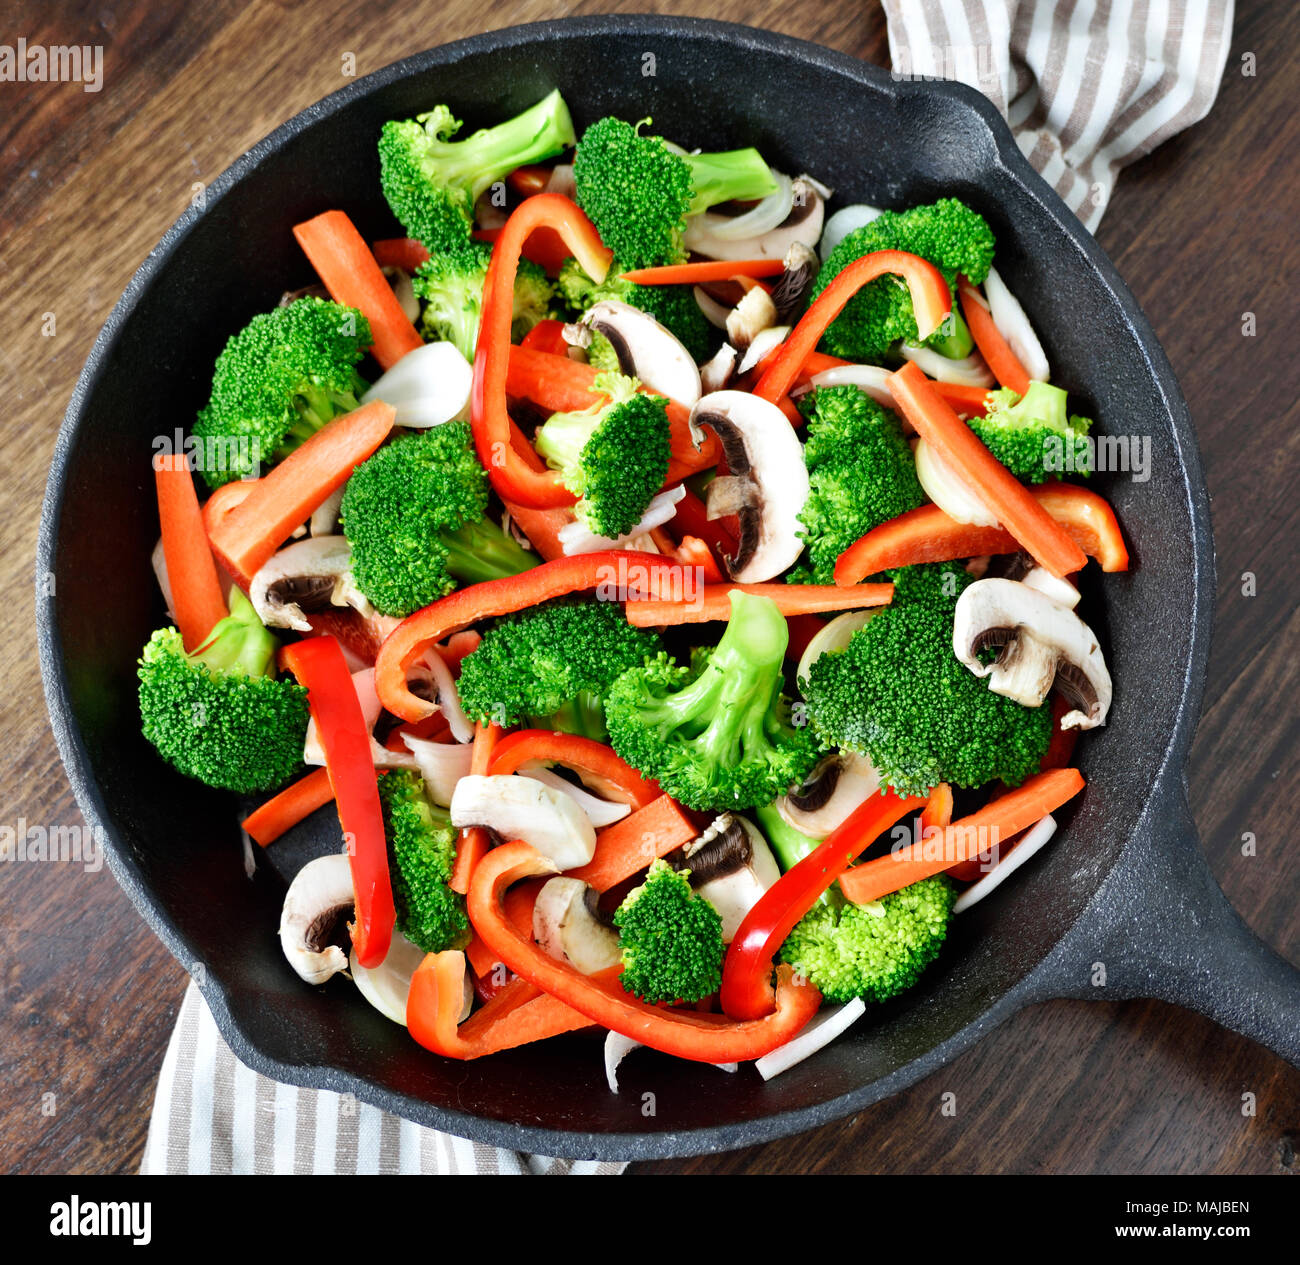 Gesunde Ernährung mit Gemüse in eine eiserne Pfanne oder Topf kochen. Brokkoli, rote Paprika, Möhren und Champignons. Stockfoto